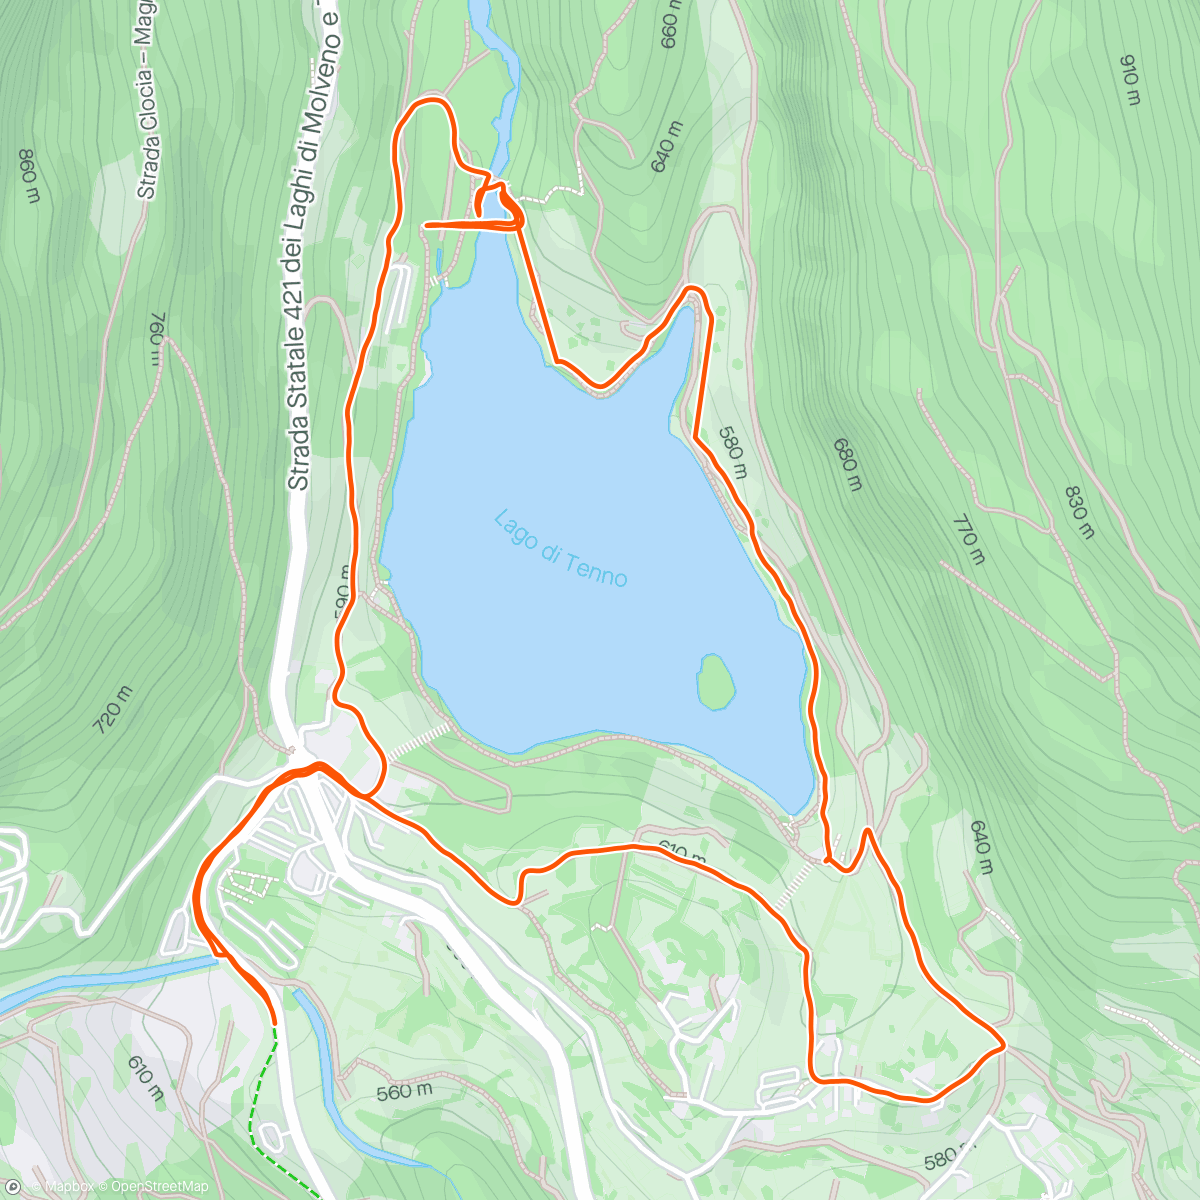 Map of the activity, Lago di Tenno